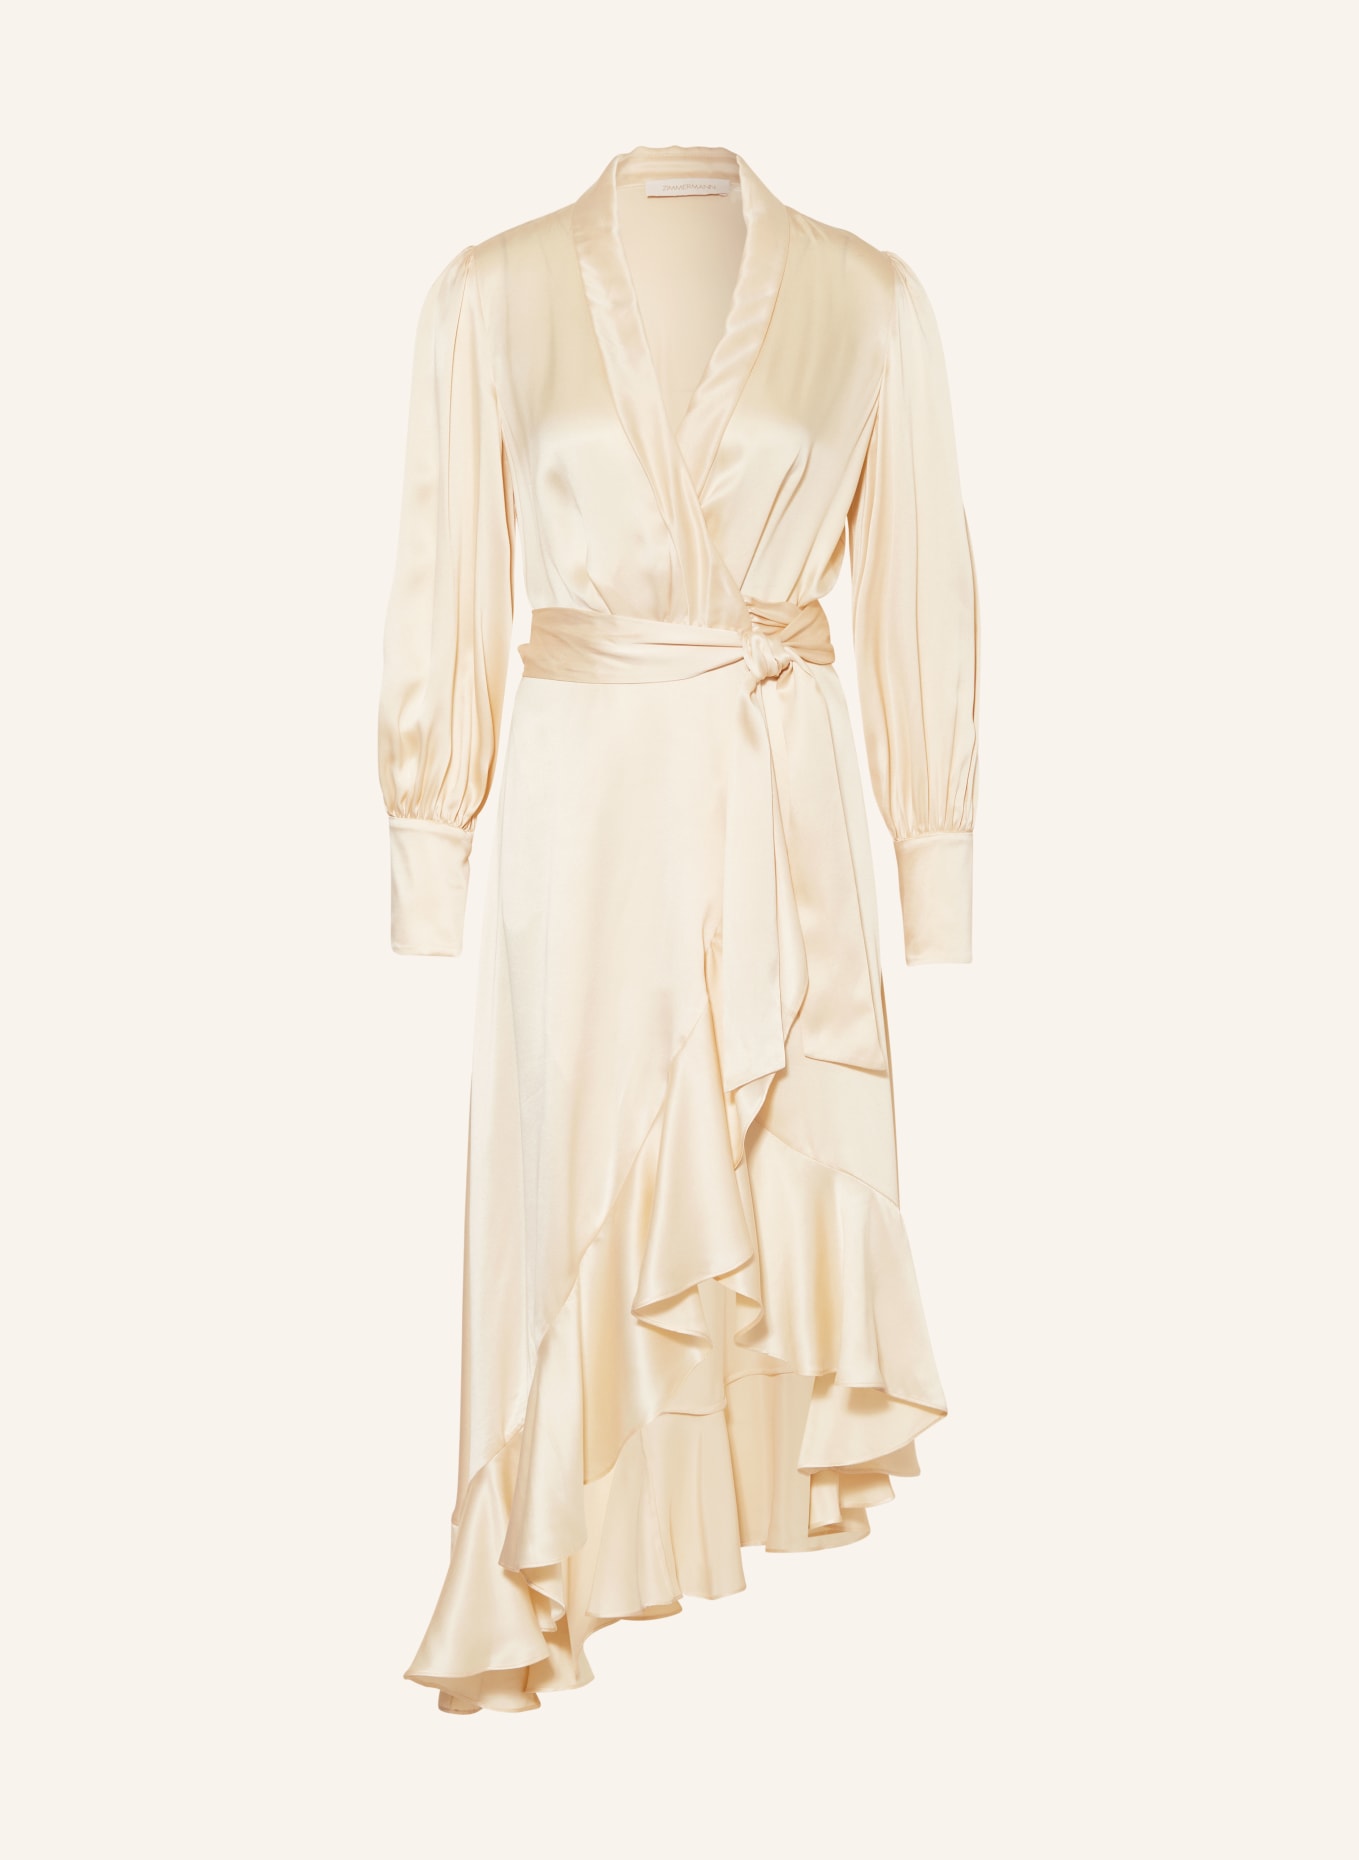 ZIMMERMANN Wickelkleid aus Seide mit Volants, Farbe: CREME (Bild 1)